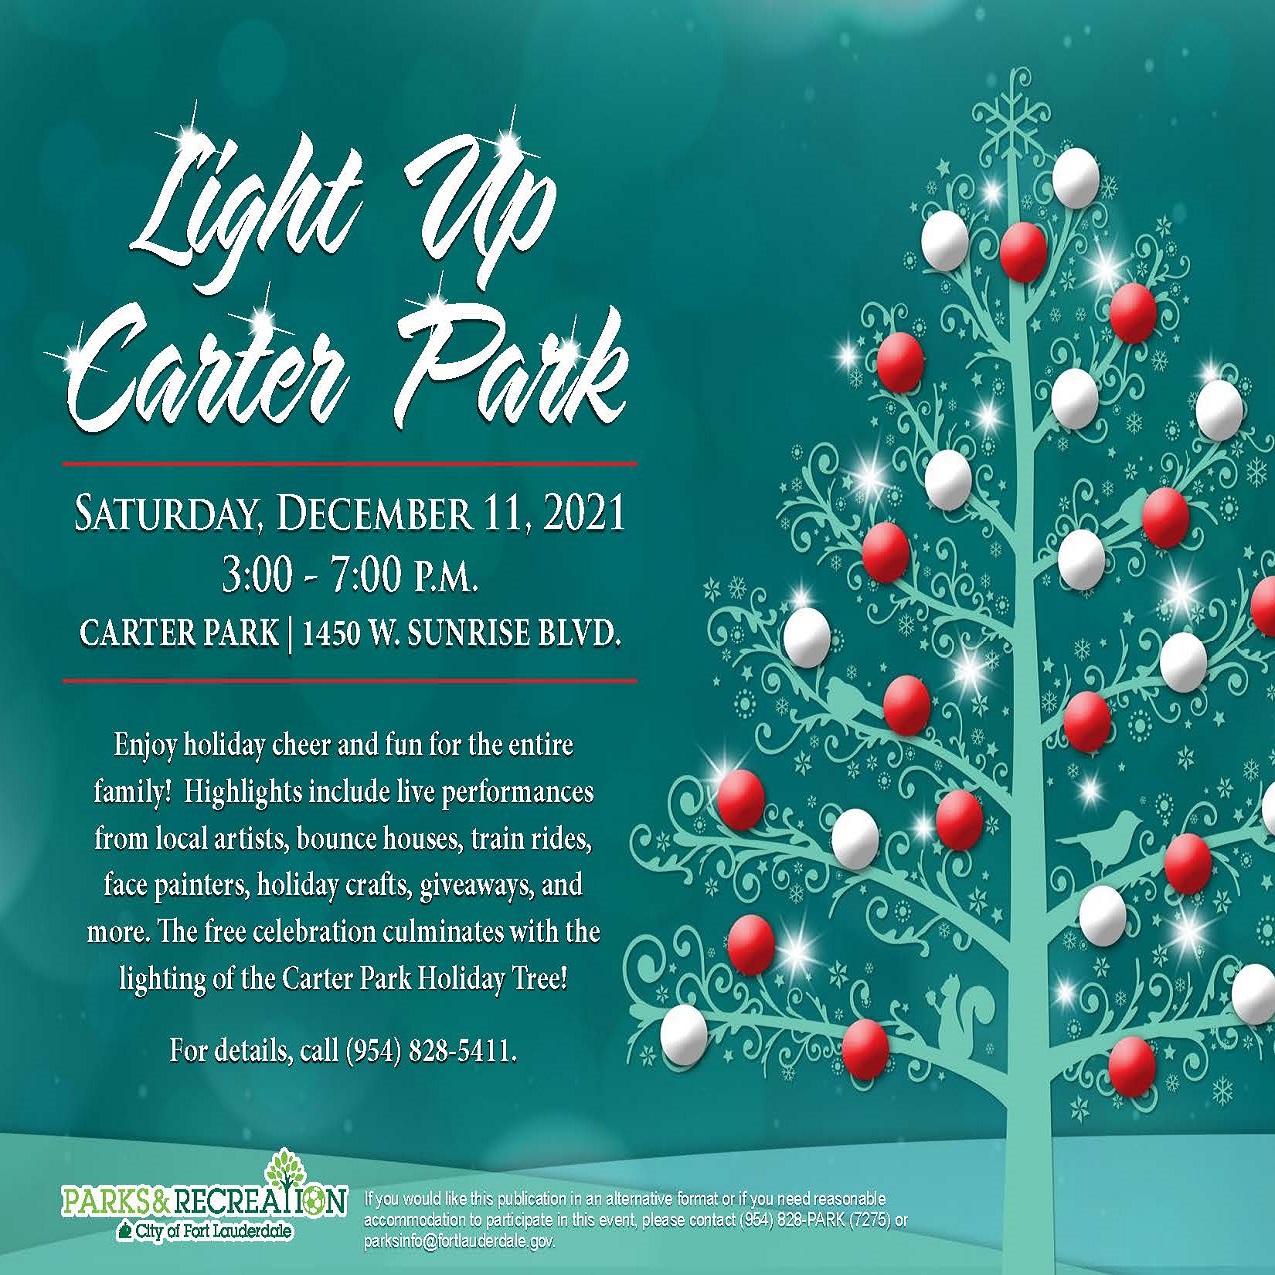 Light Up Carter Park